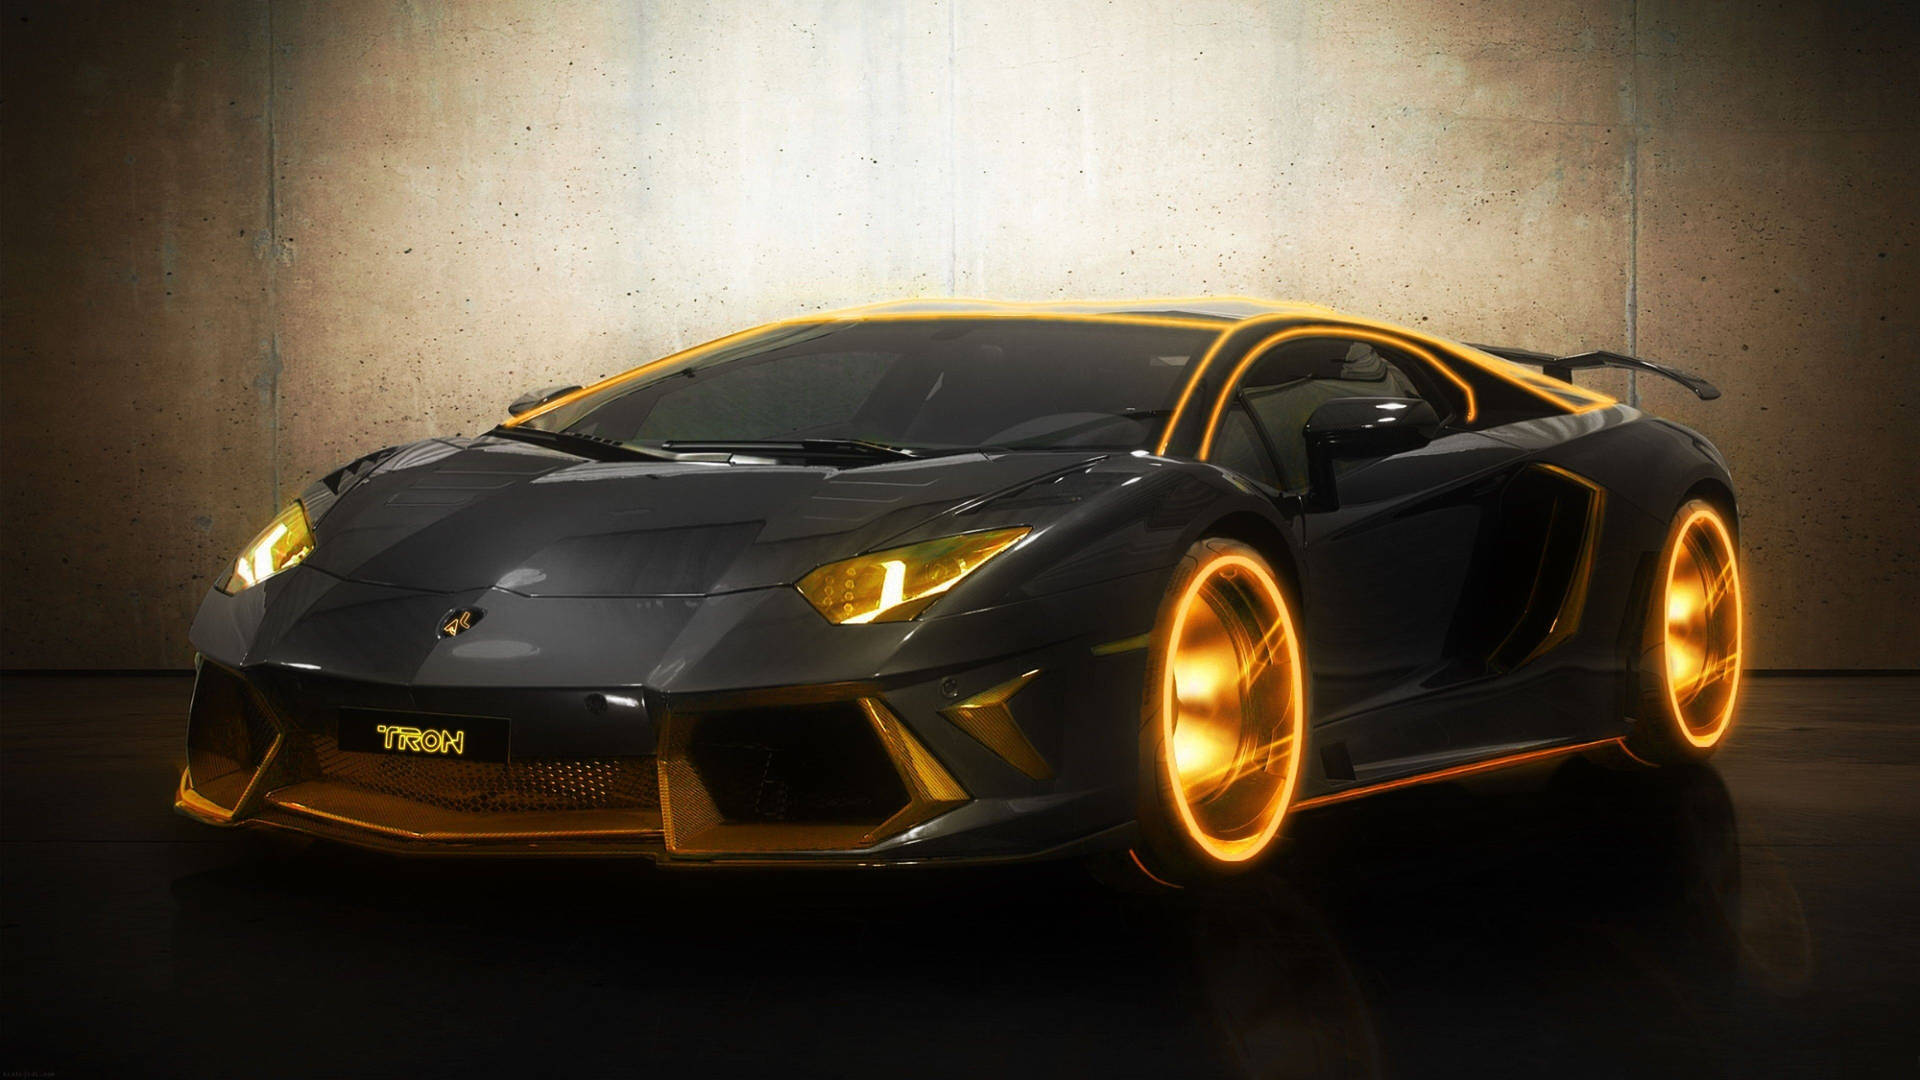 Download Cool Cars: Modern Black Lamborghini Wallpaper | Wallpapers.com